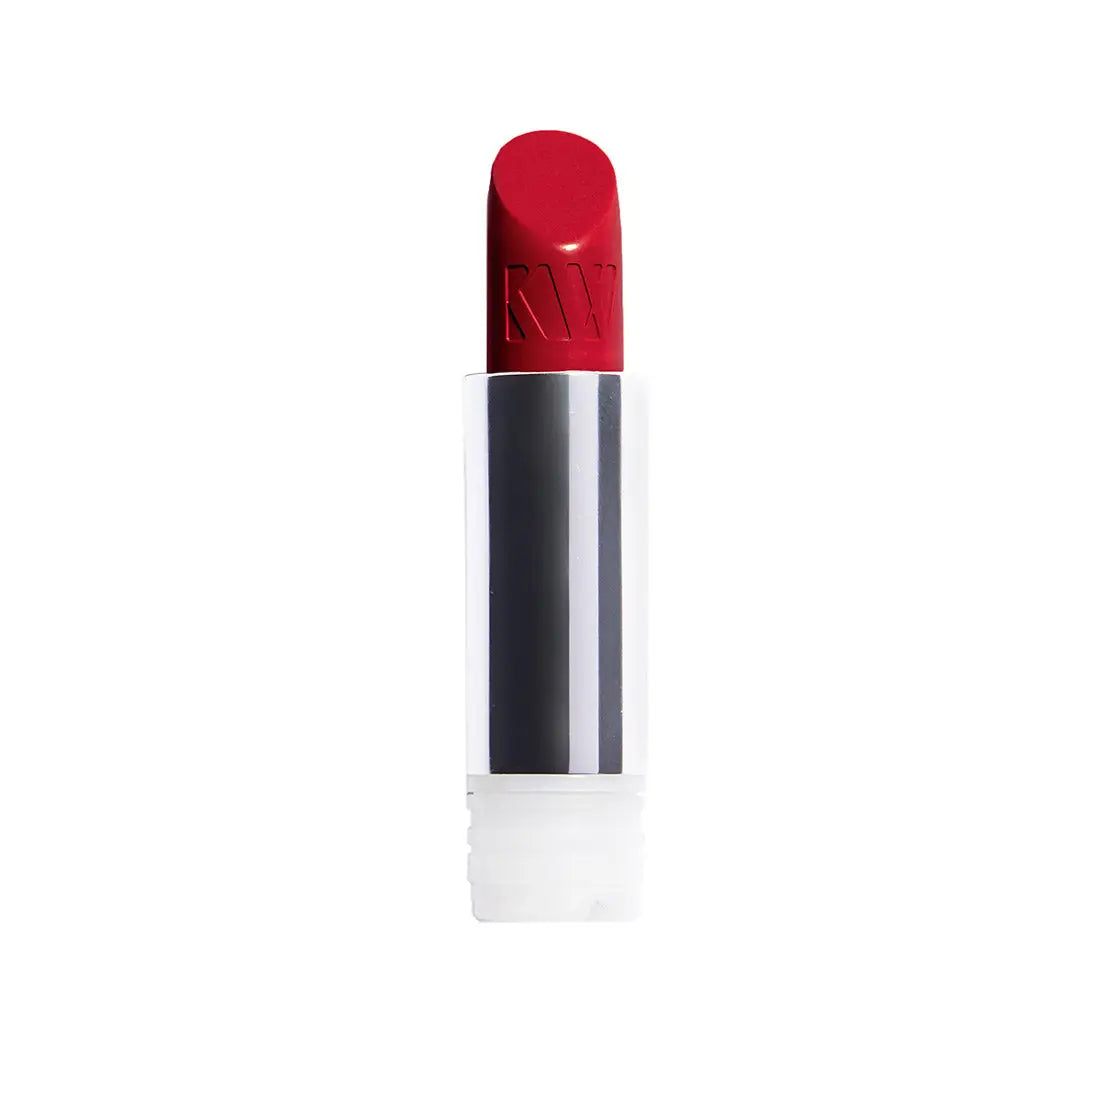 Kjaer Weis Lipstick Refill - Sucre Free Shipping Worldwide